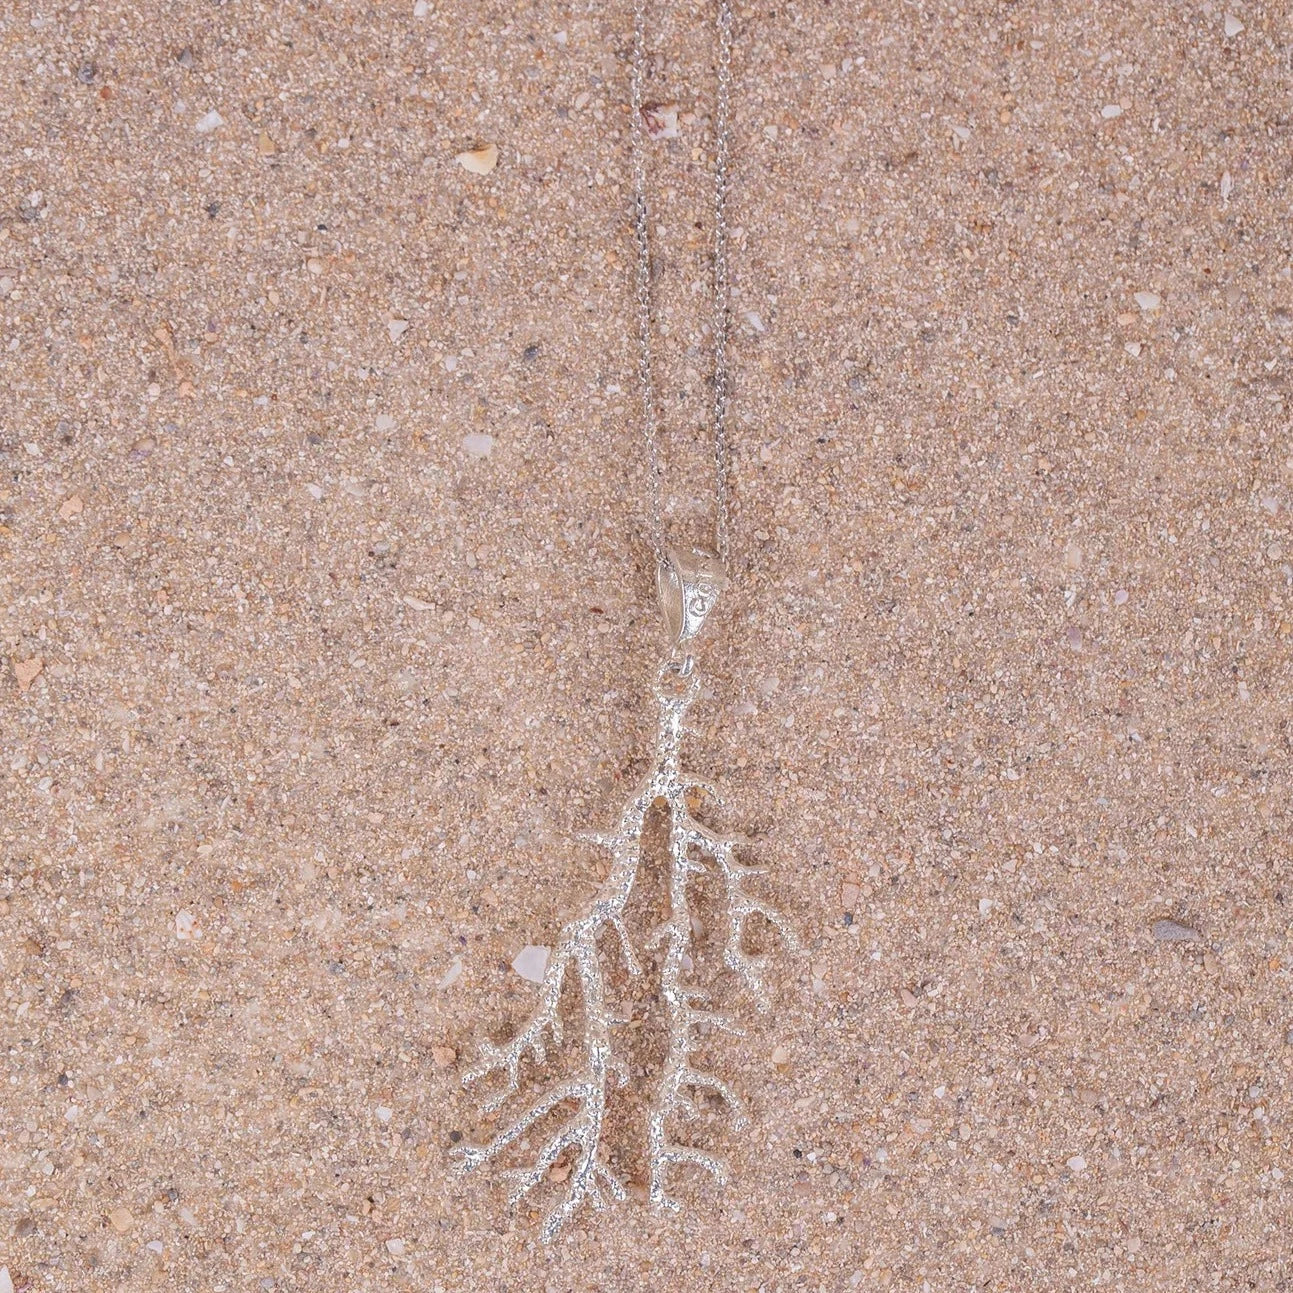 Detalles en macro del Colgante Gorgonia en Plata de 40cm sobre arena.